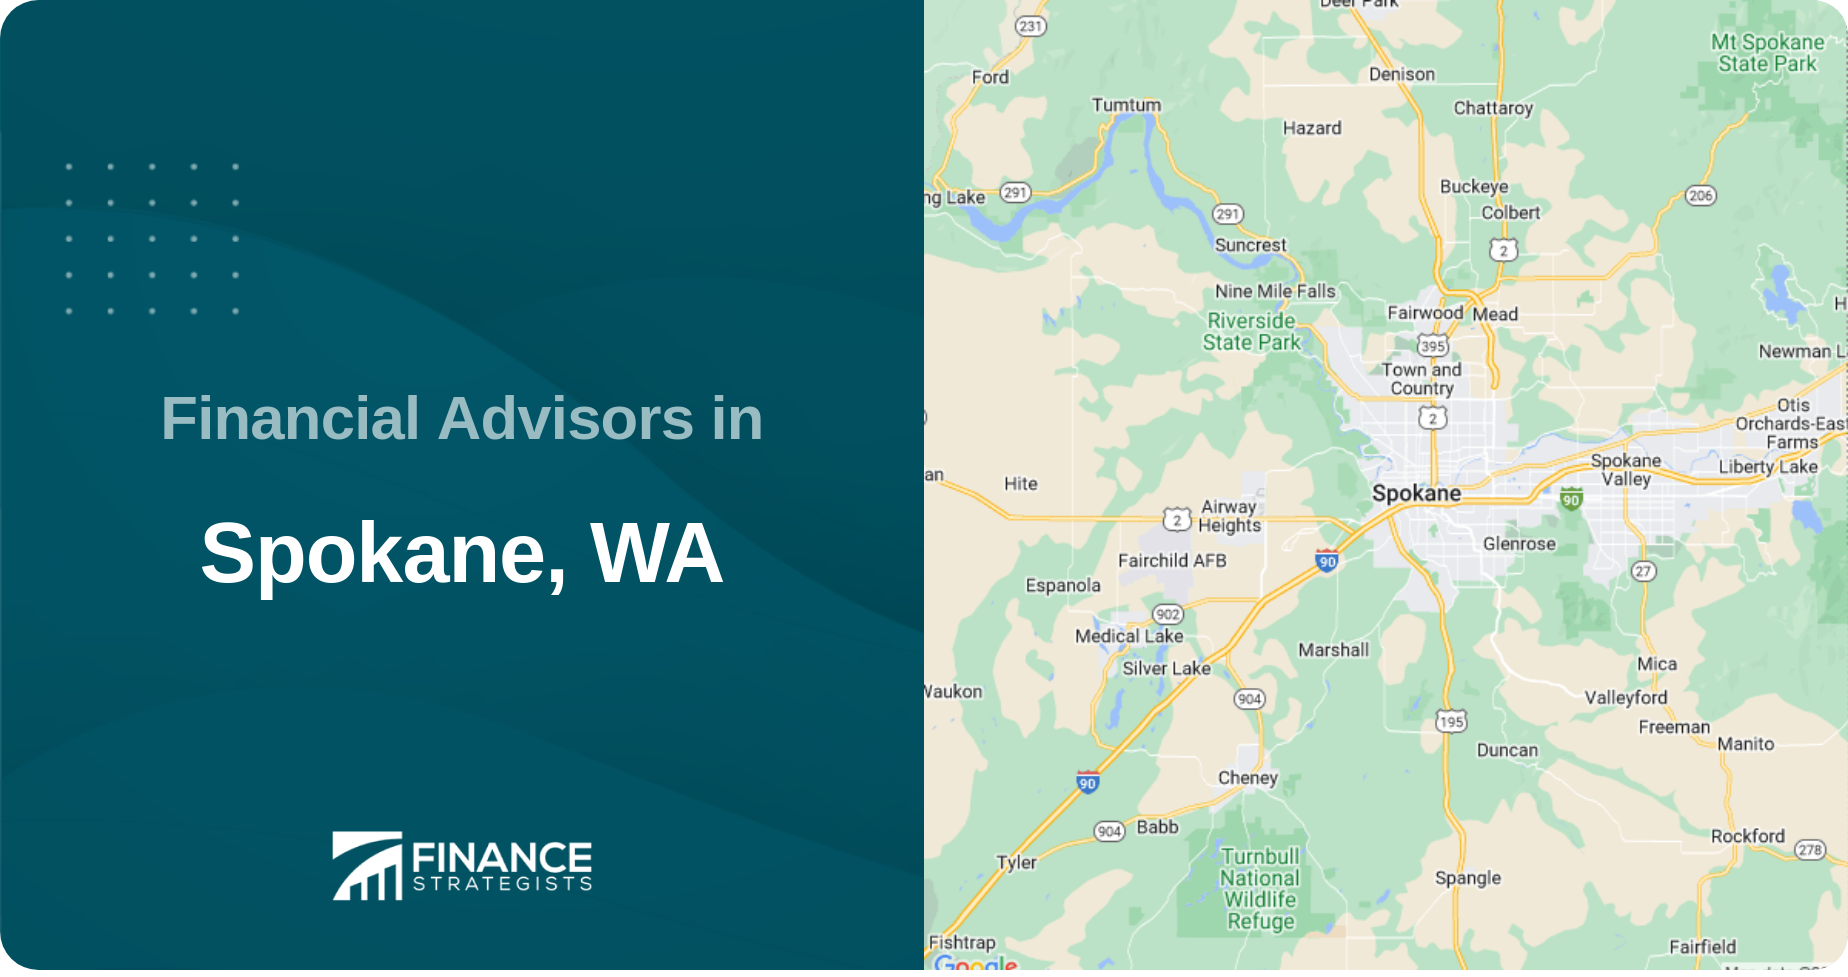 Financial Advisors in Spokane, WA